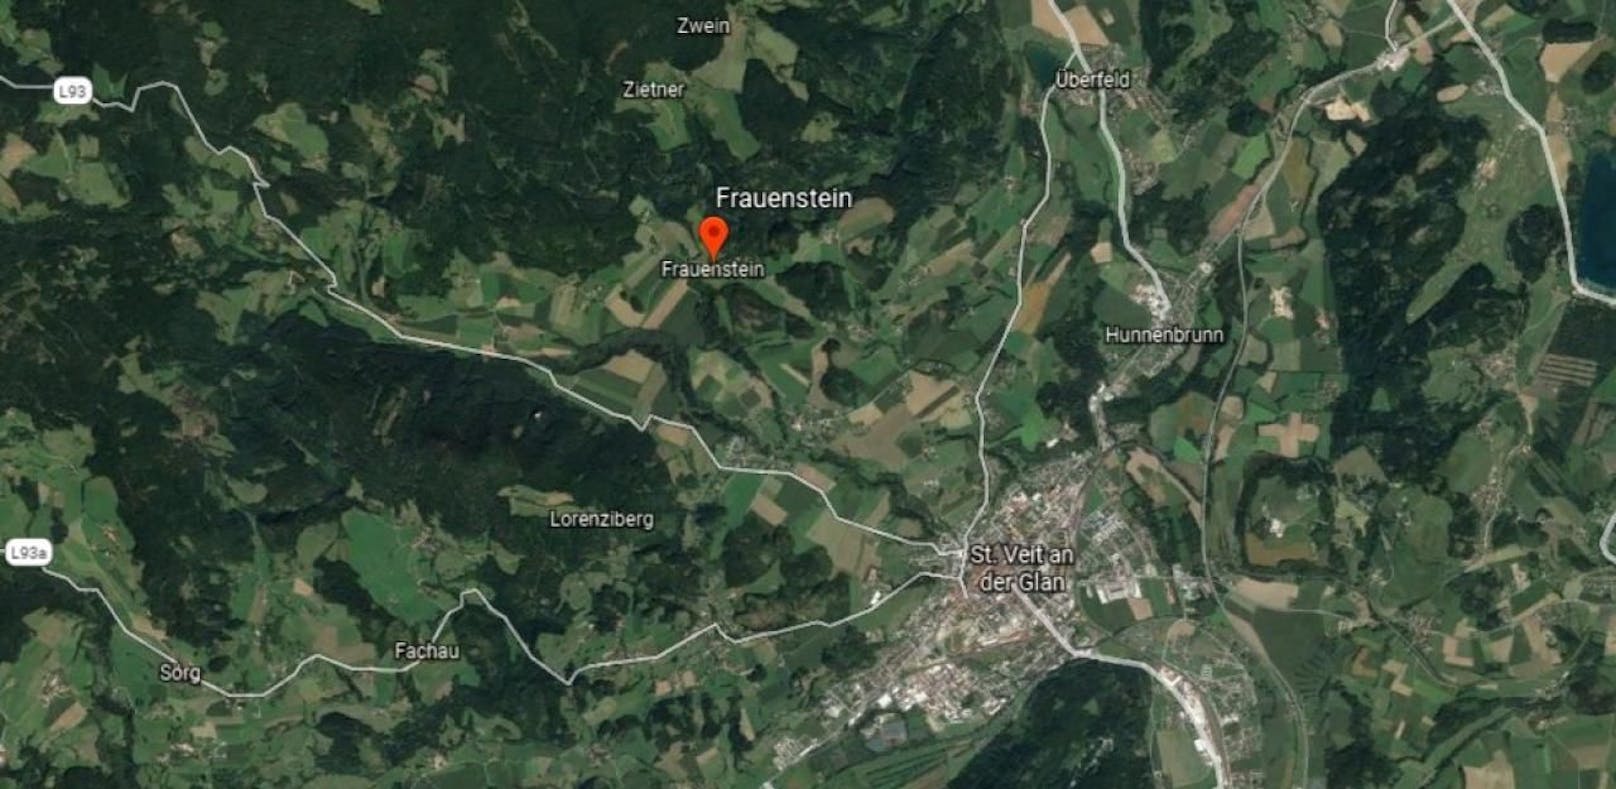 Die tödliche Stierattacke ereignete sich in Frauenstein, Bezirk St. Veit